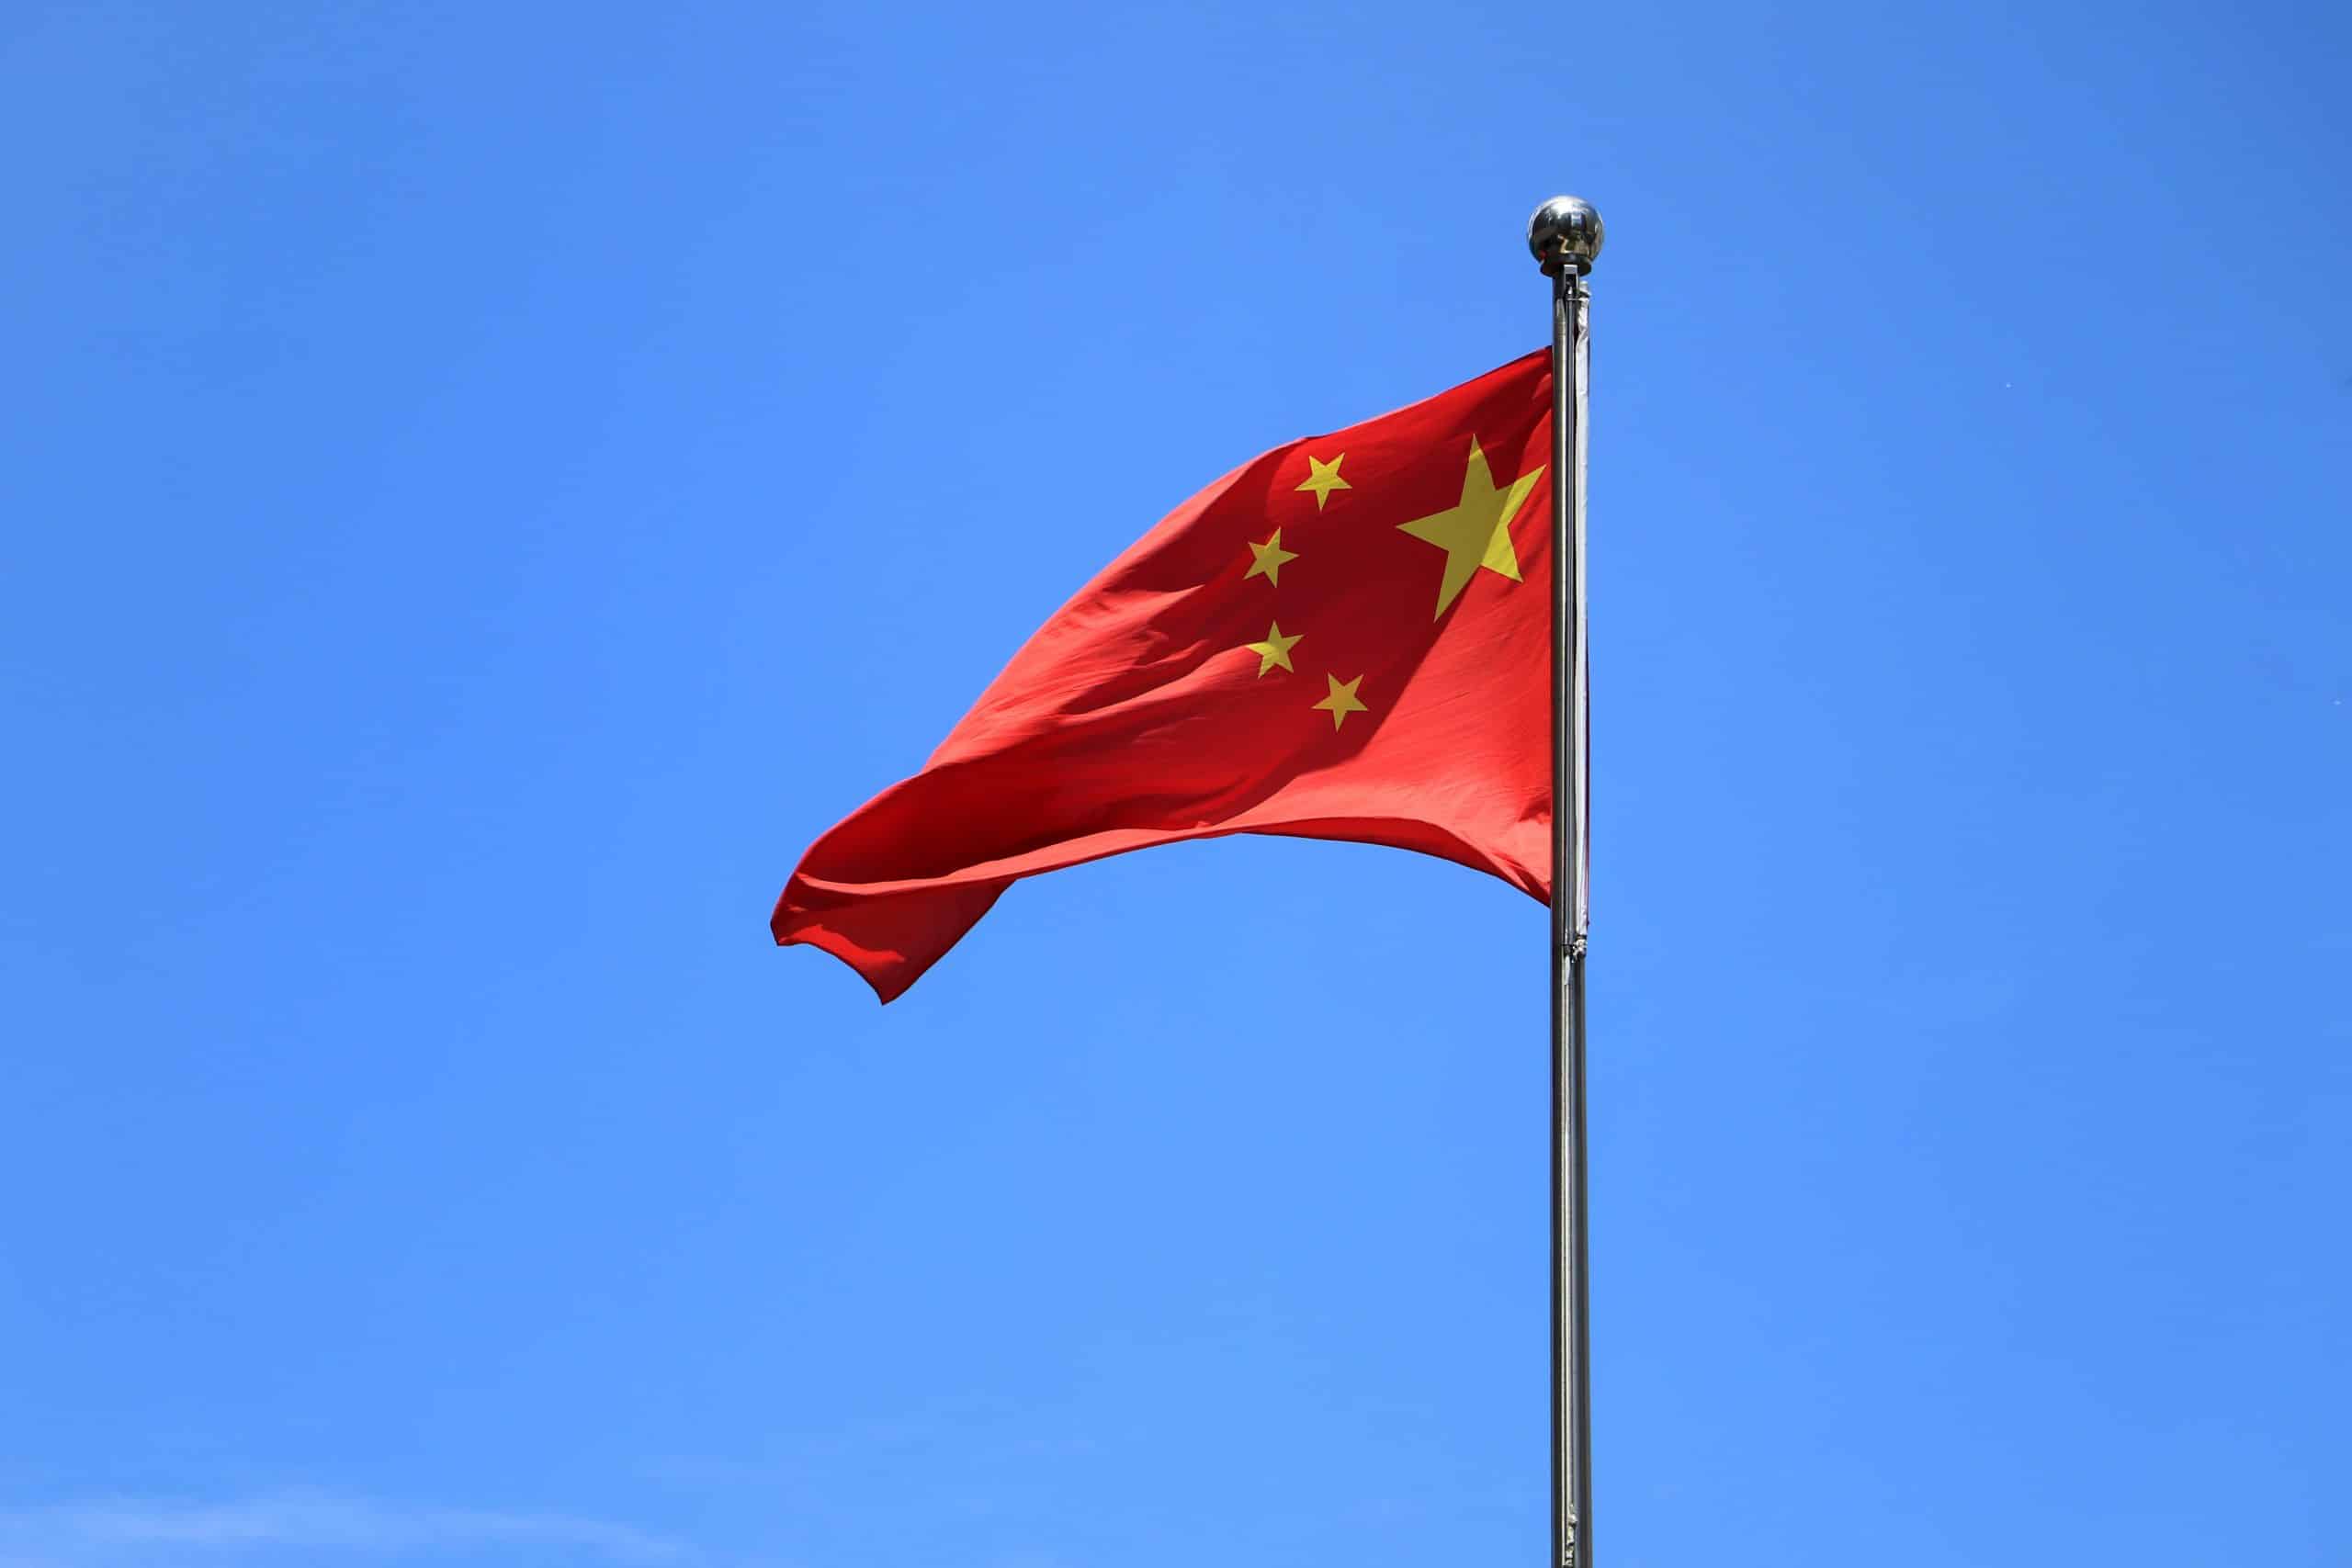 Le drapeau chinois flotte devant un ciel bleu.